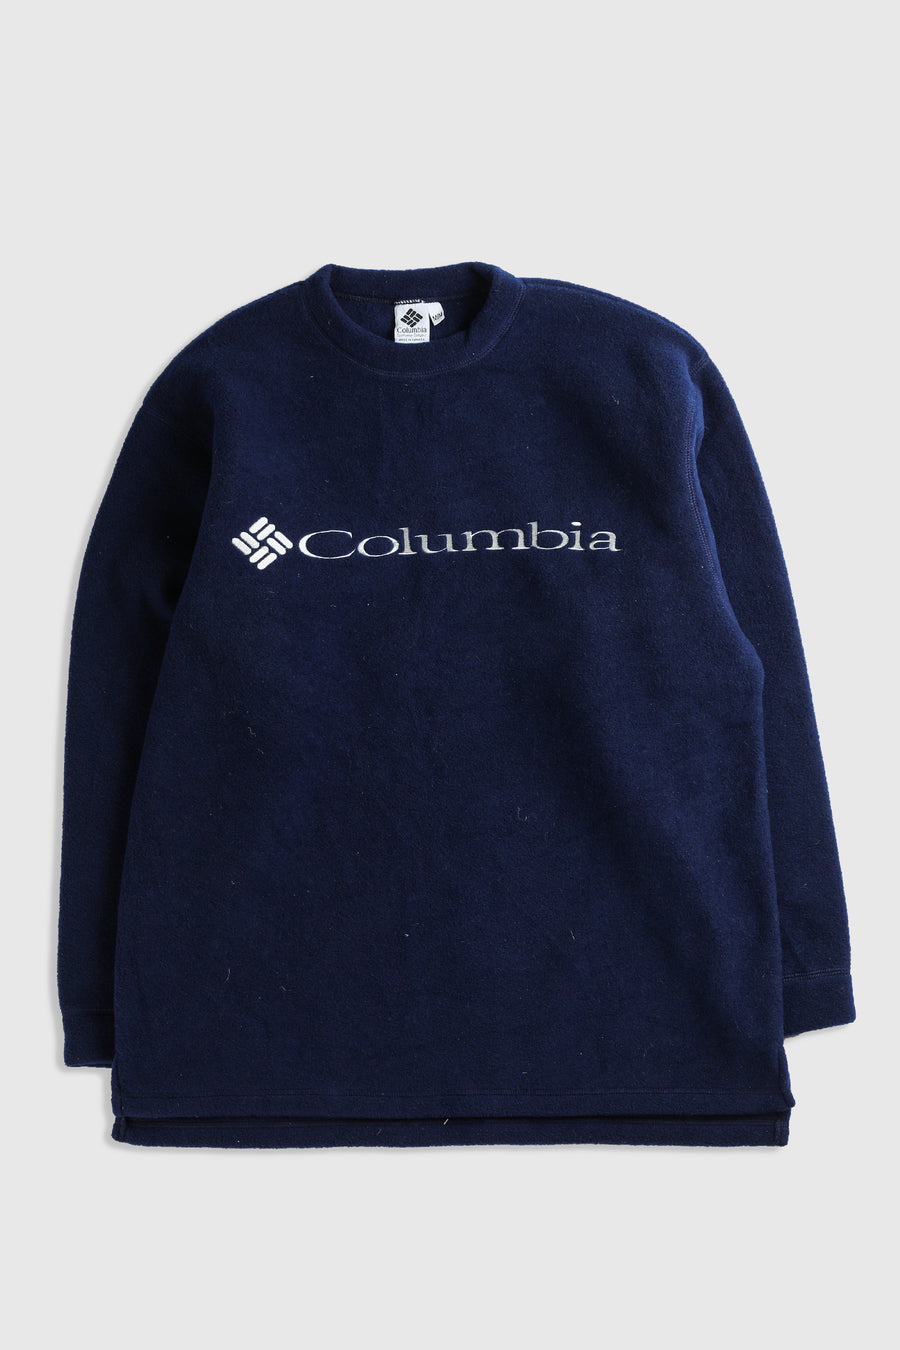 Vintage Columbia Fleece